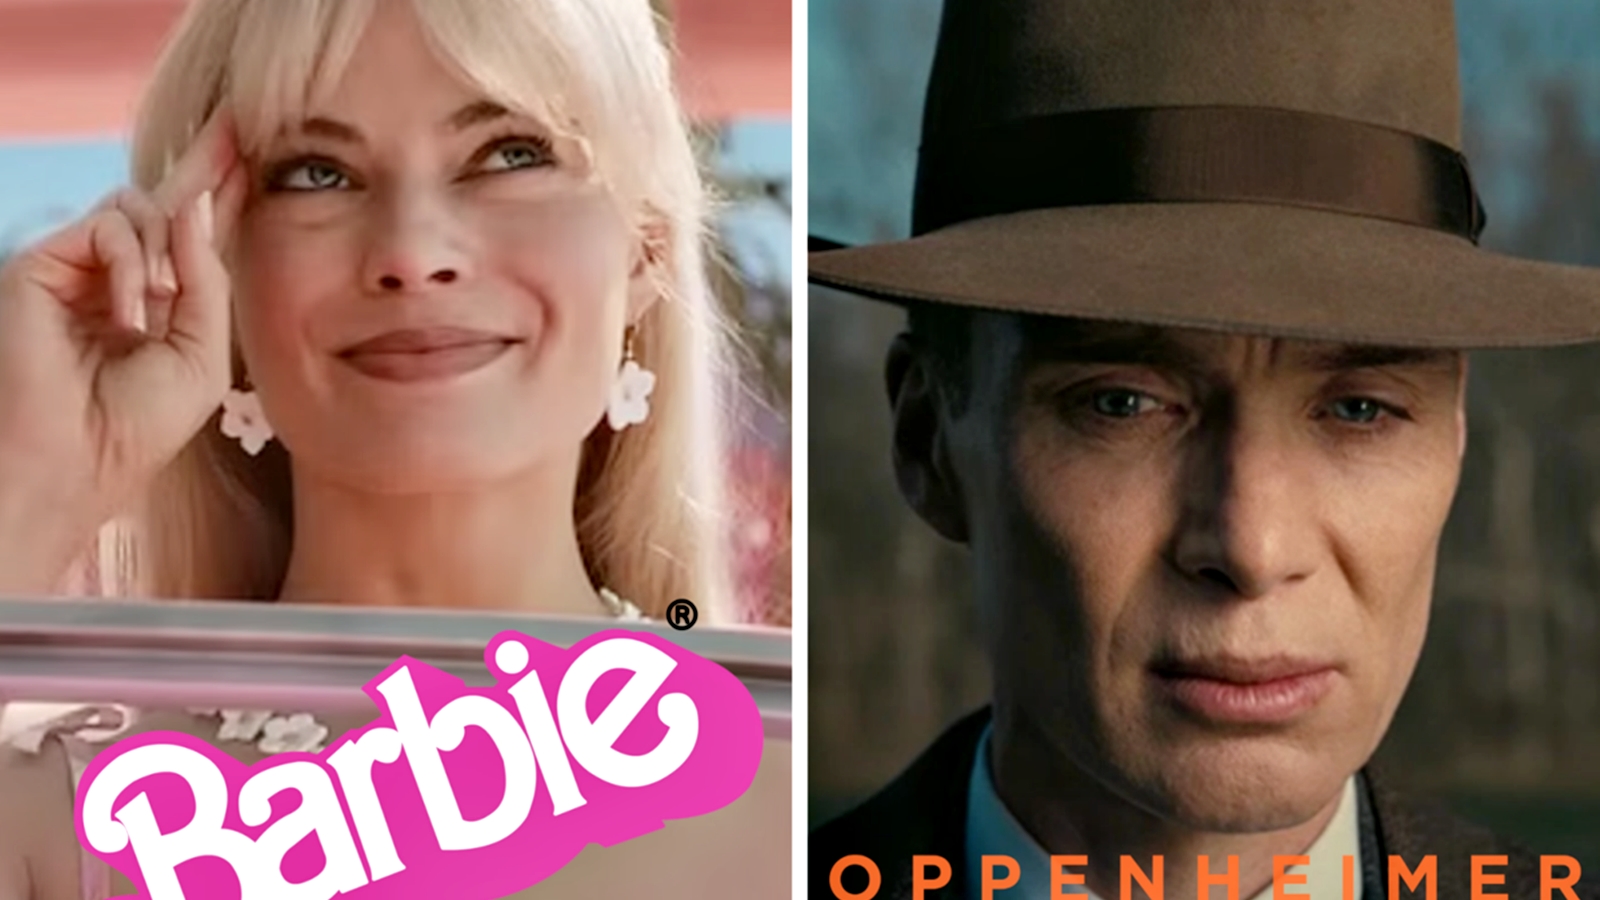 Barbie e Oppenheimer: oltre 20.000 spettatori americani vedranno i due film nelle sale AMC nello stesso giorno